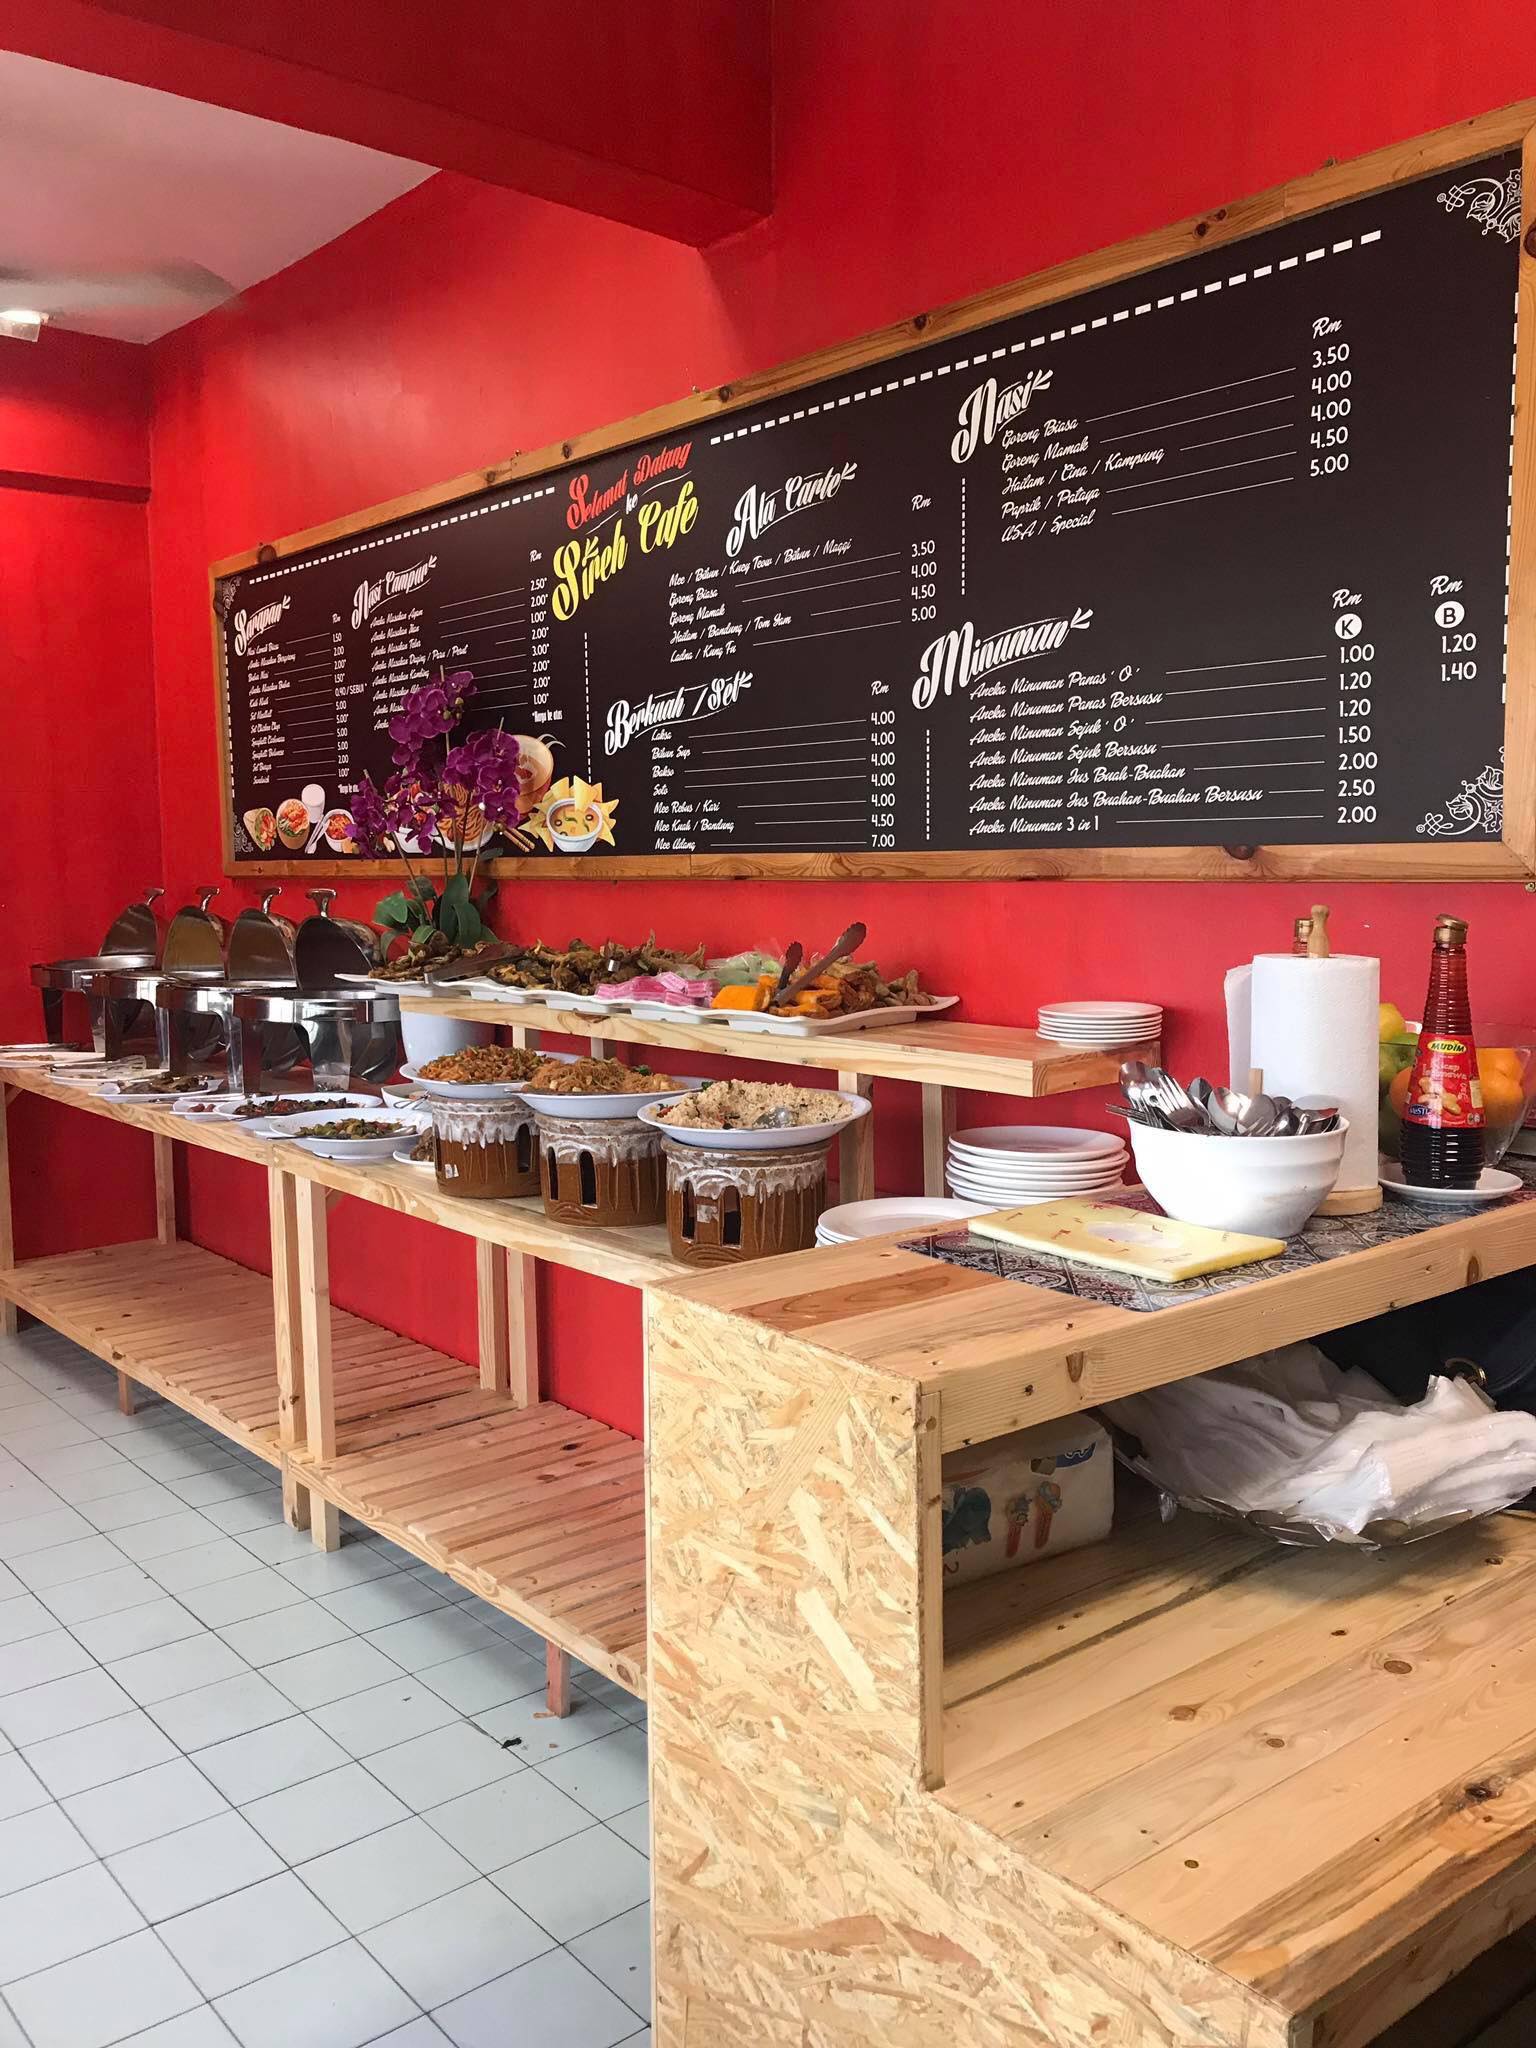  FOTO Kantin Sekolah Persis Restoran  Mewah Harga  Makanan 